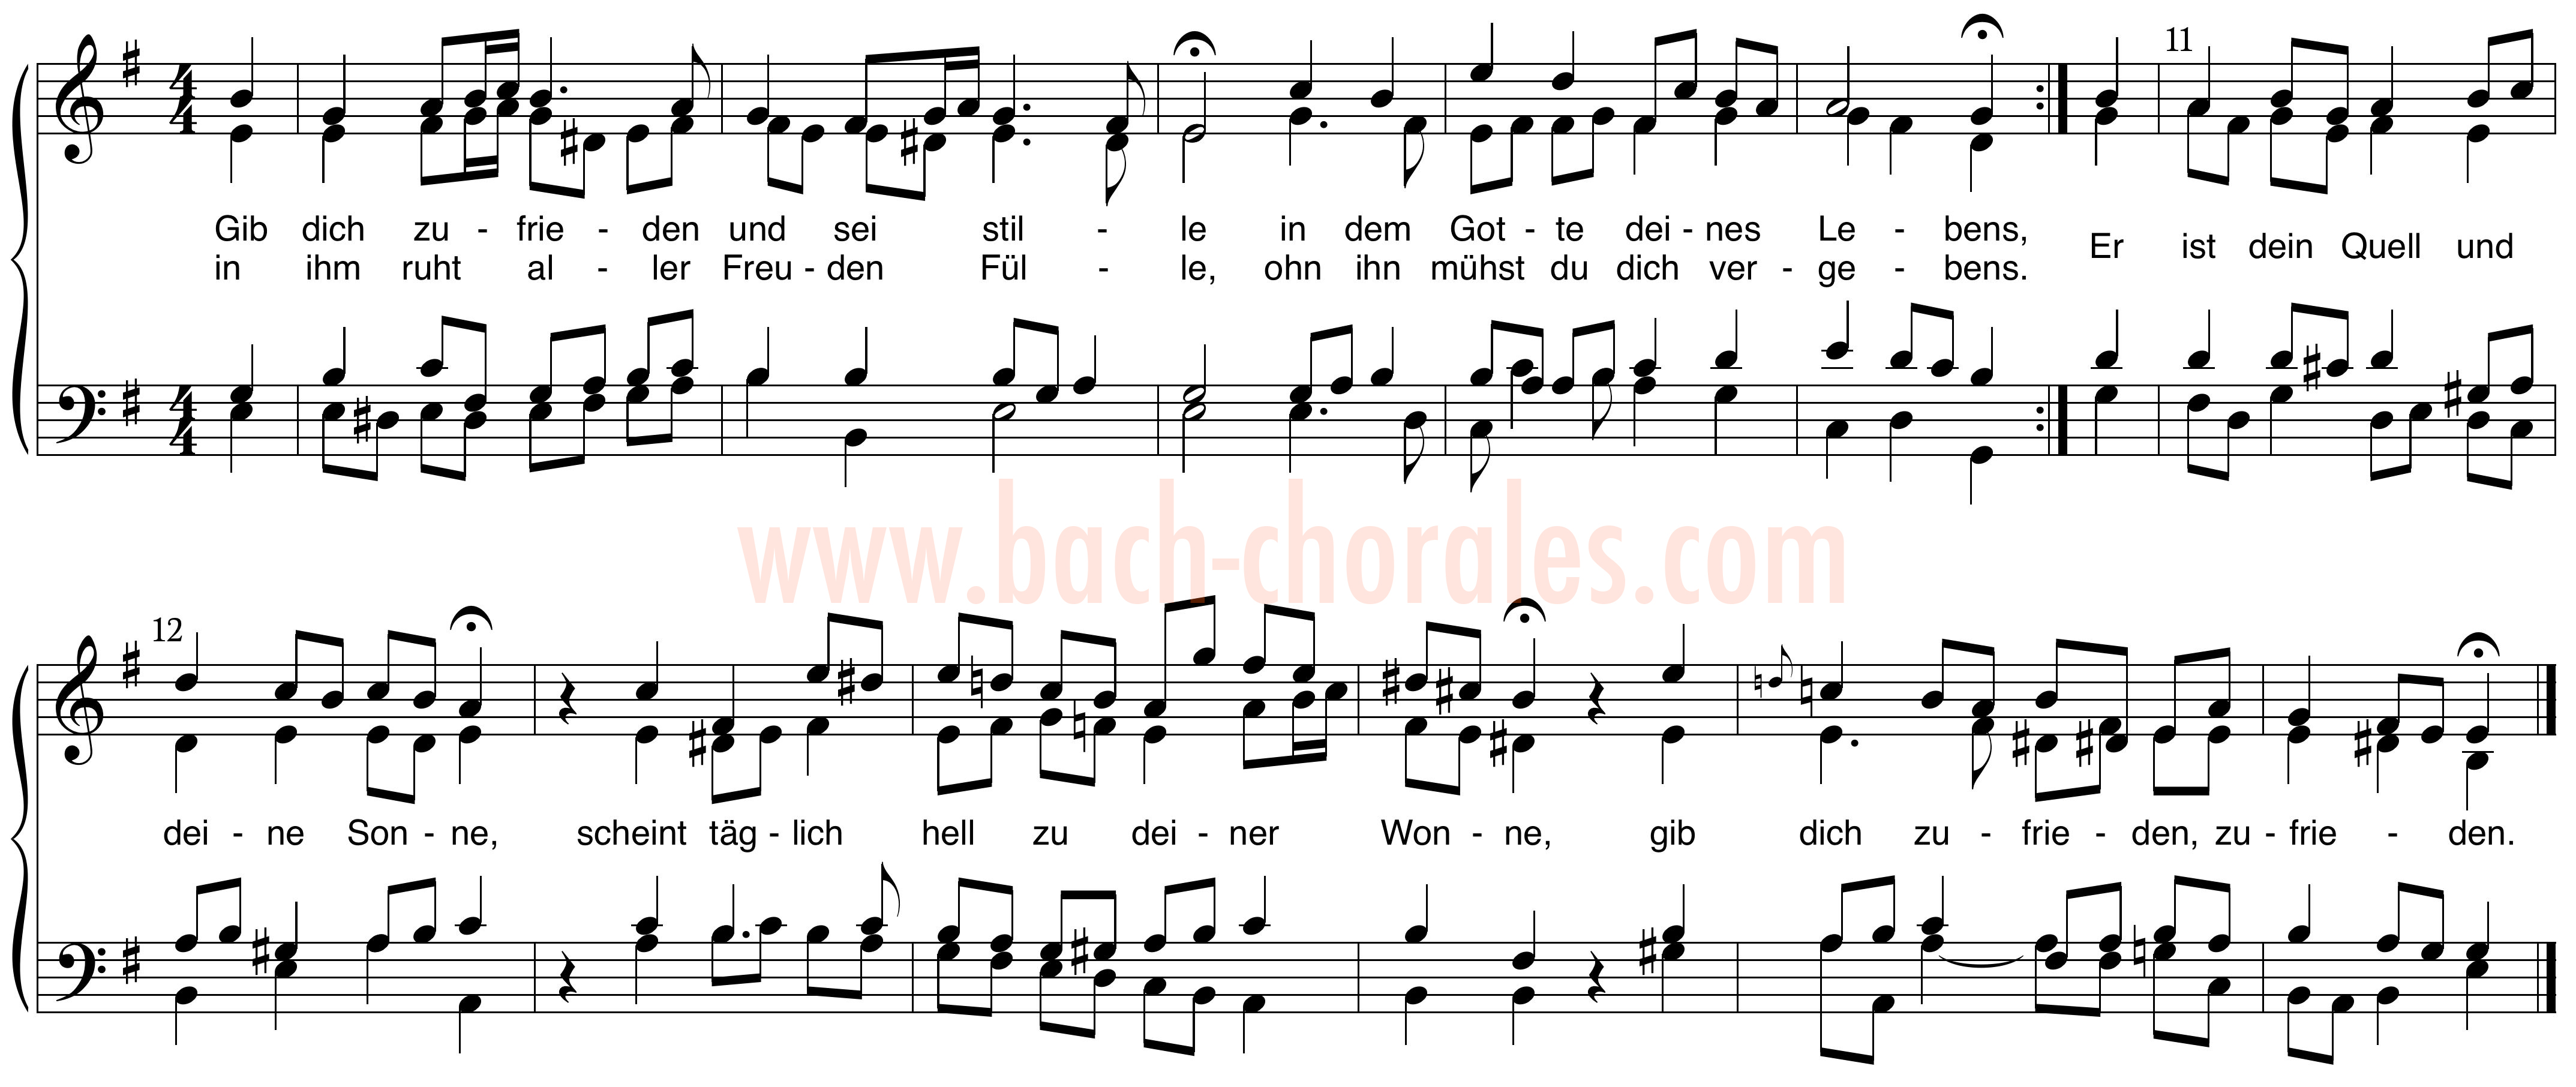 notenbeeld BWV 315 op https://www.bach-chorales.com/